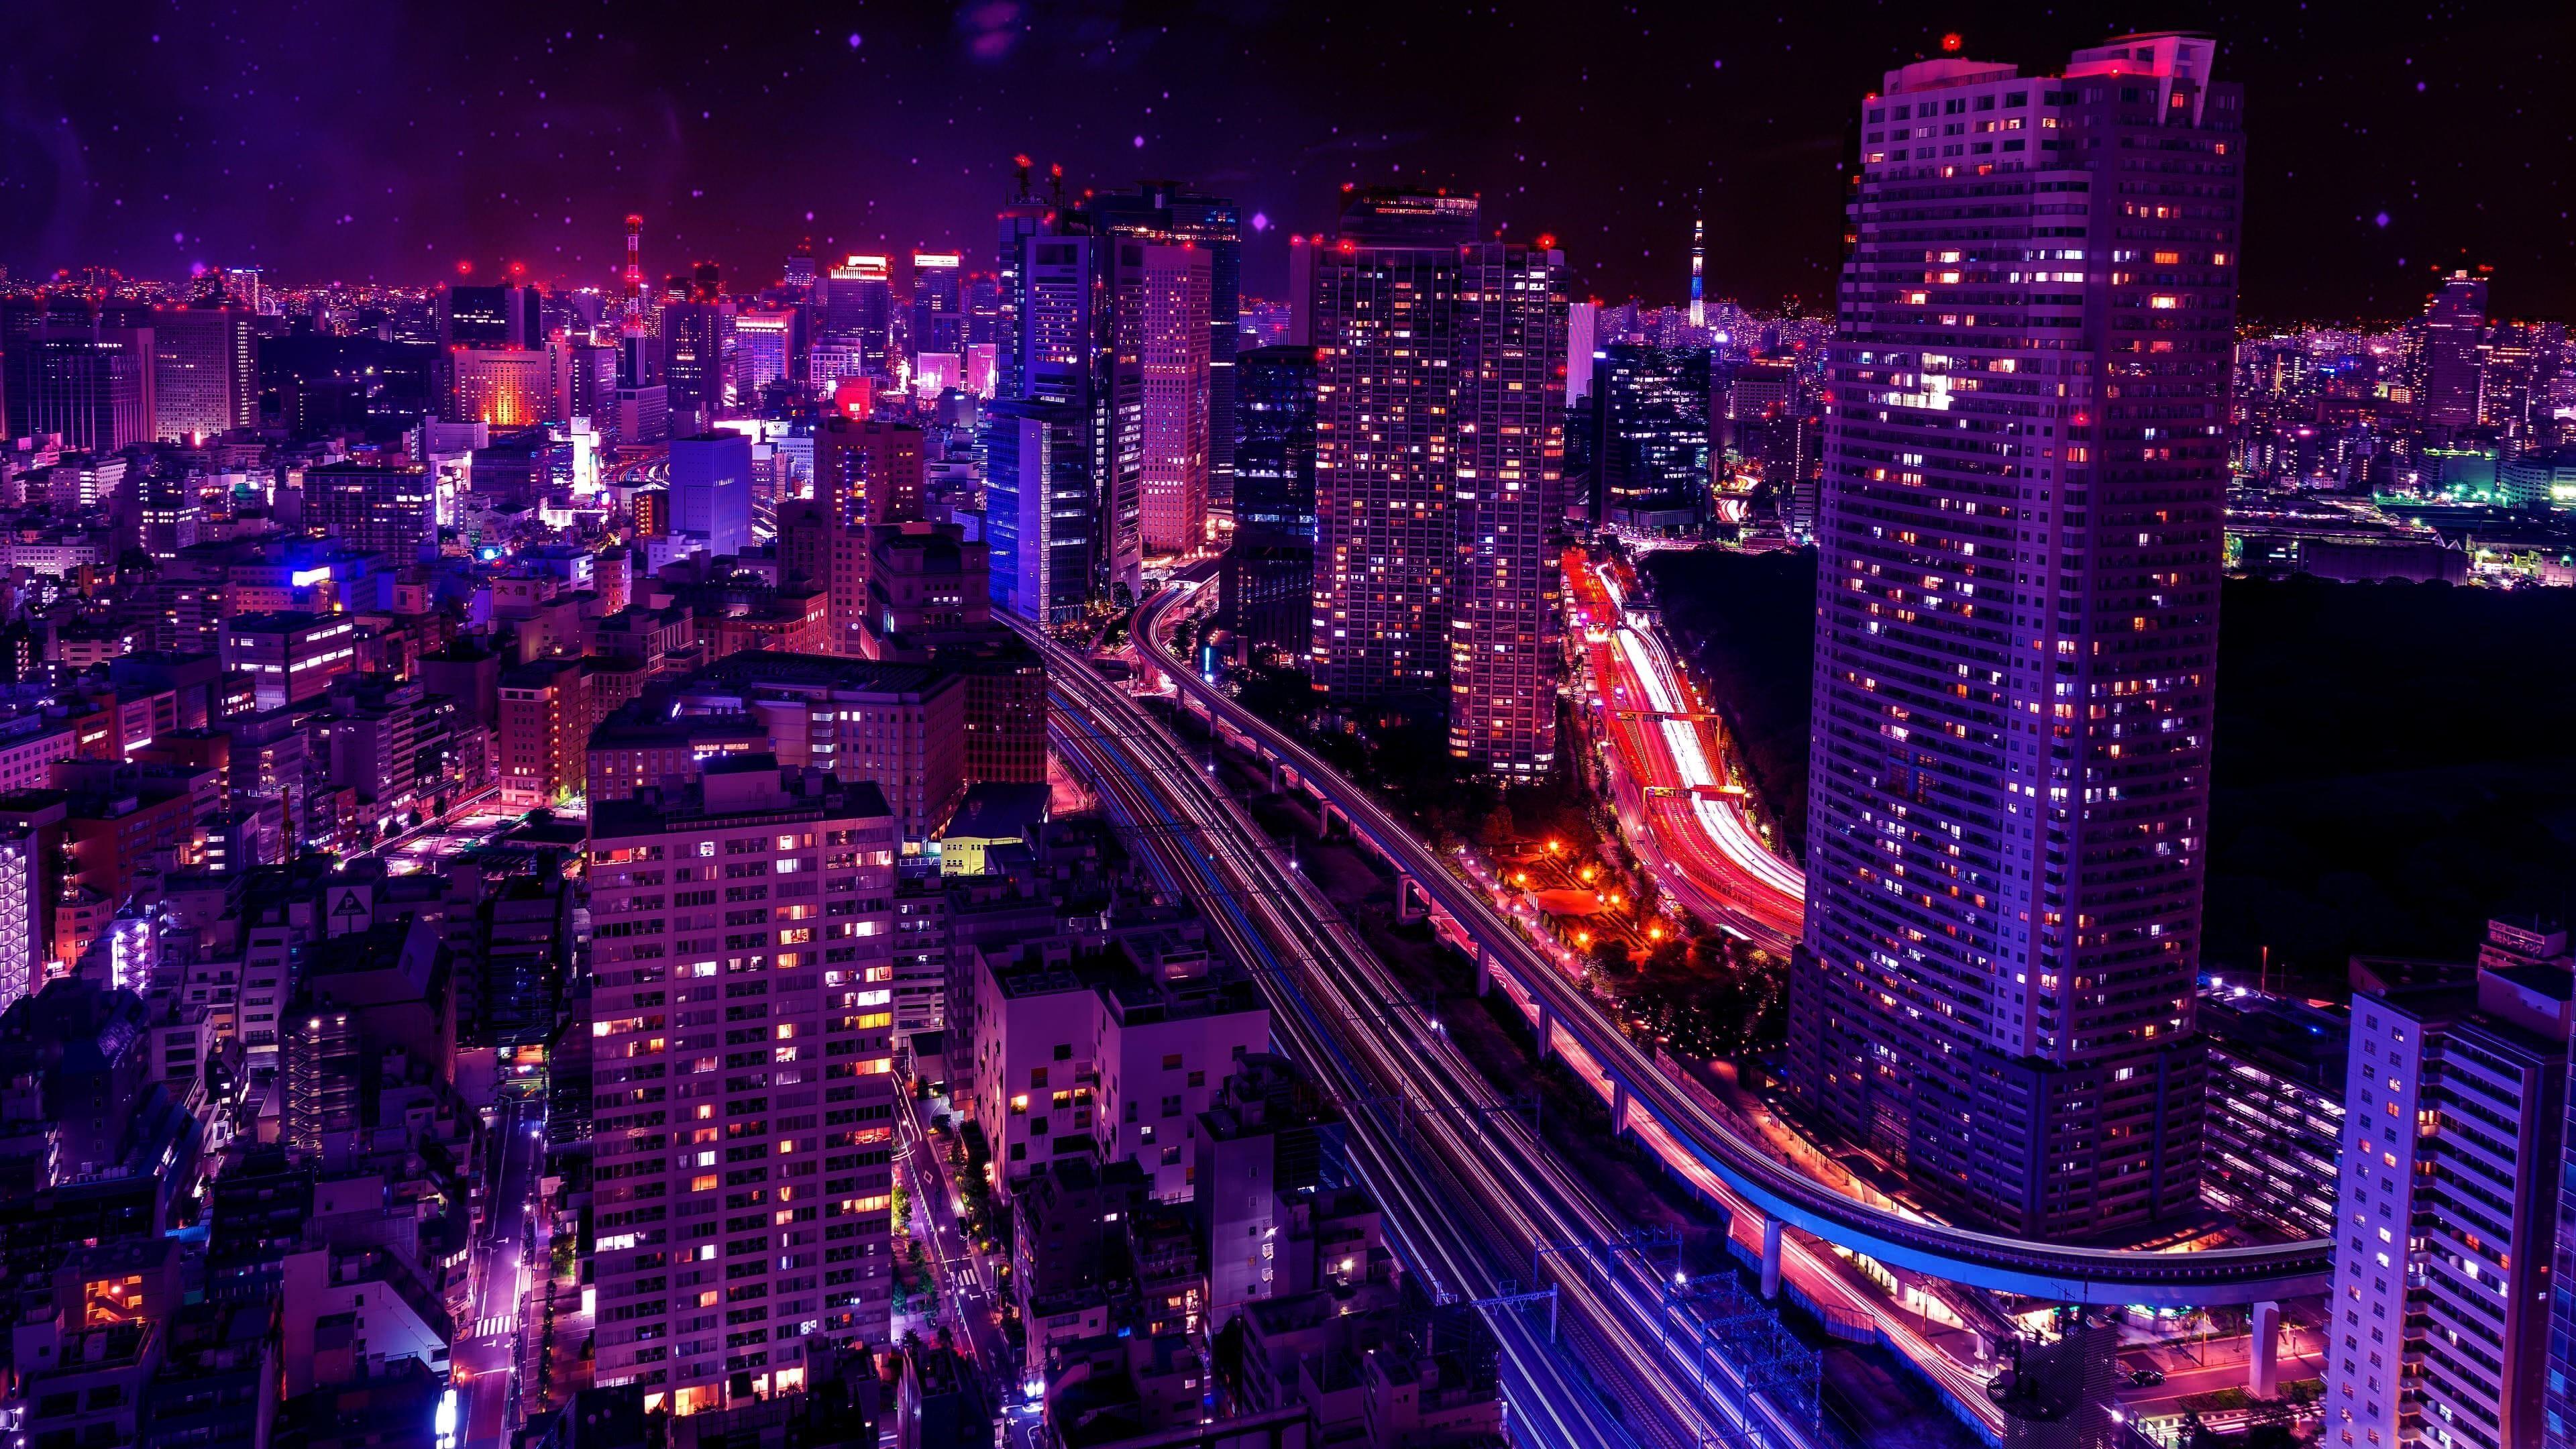 Tokyo màu tím đem lại cho bạn cảm giác thư thái và yên bình. Hình ảnh của một Tokyo tím giúp bạn hiểu được sự hài hòa của những người dân và cảm nhận được không khí đầy sắc màu của thành phố này.